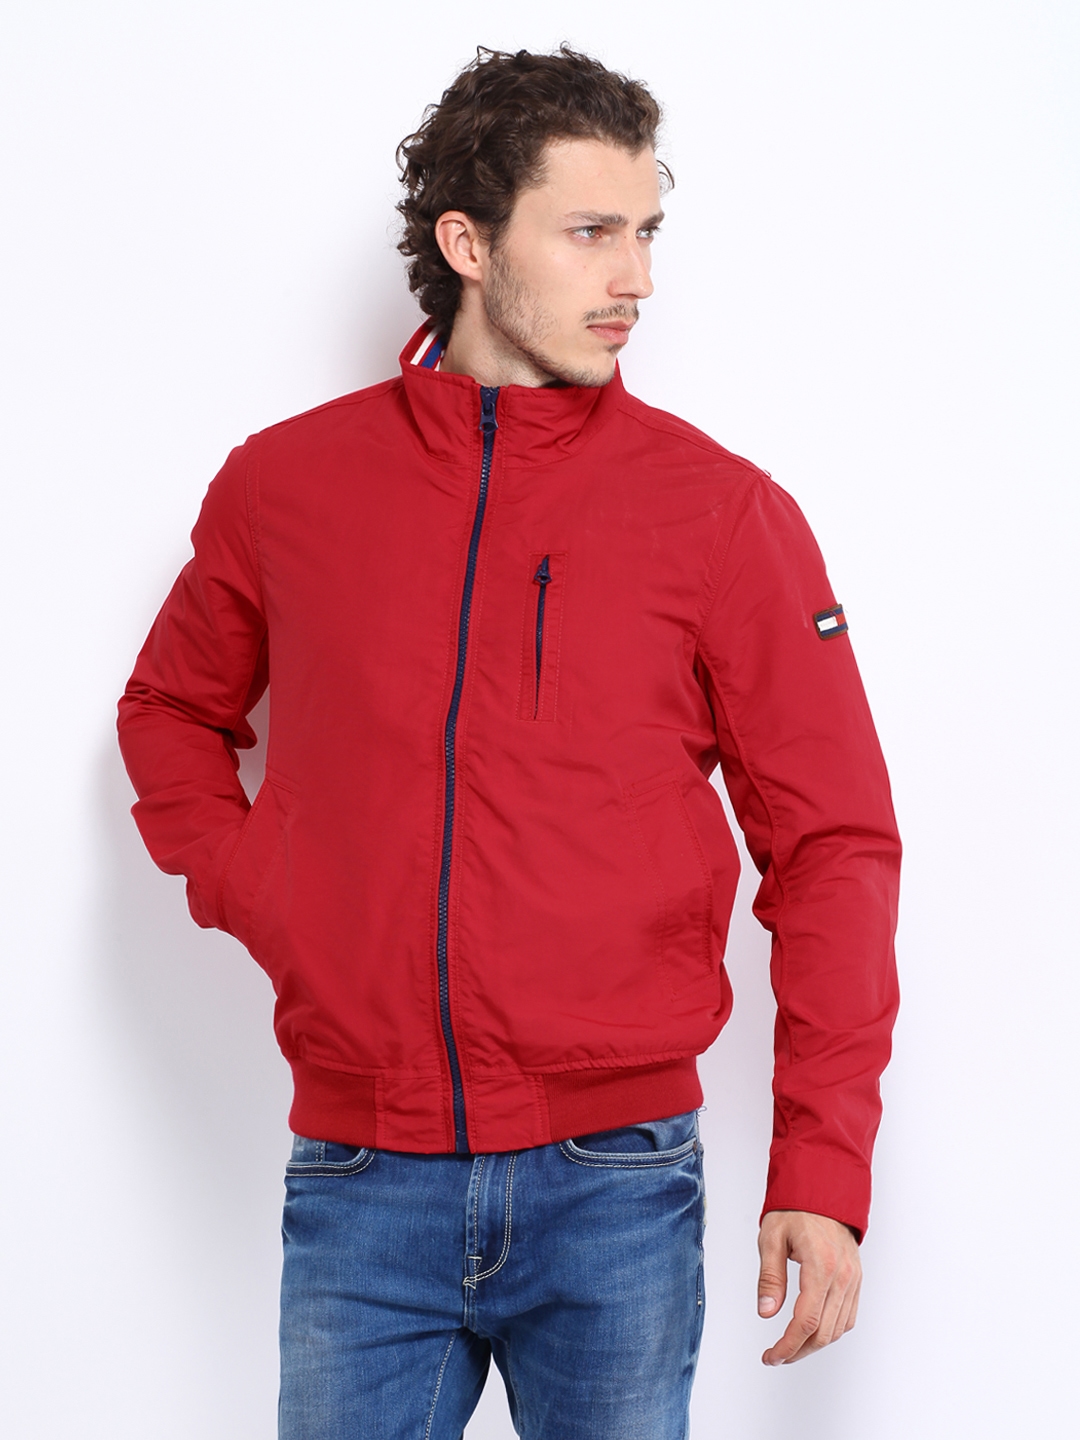 Buy Tommy Red Bobby Jacket - Jackets Men 511227 | Myntra